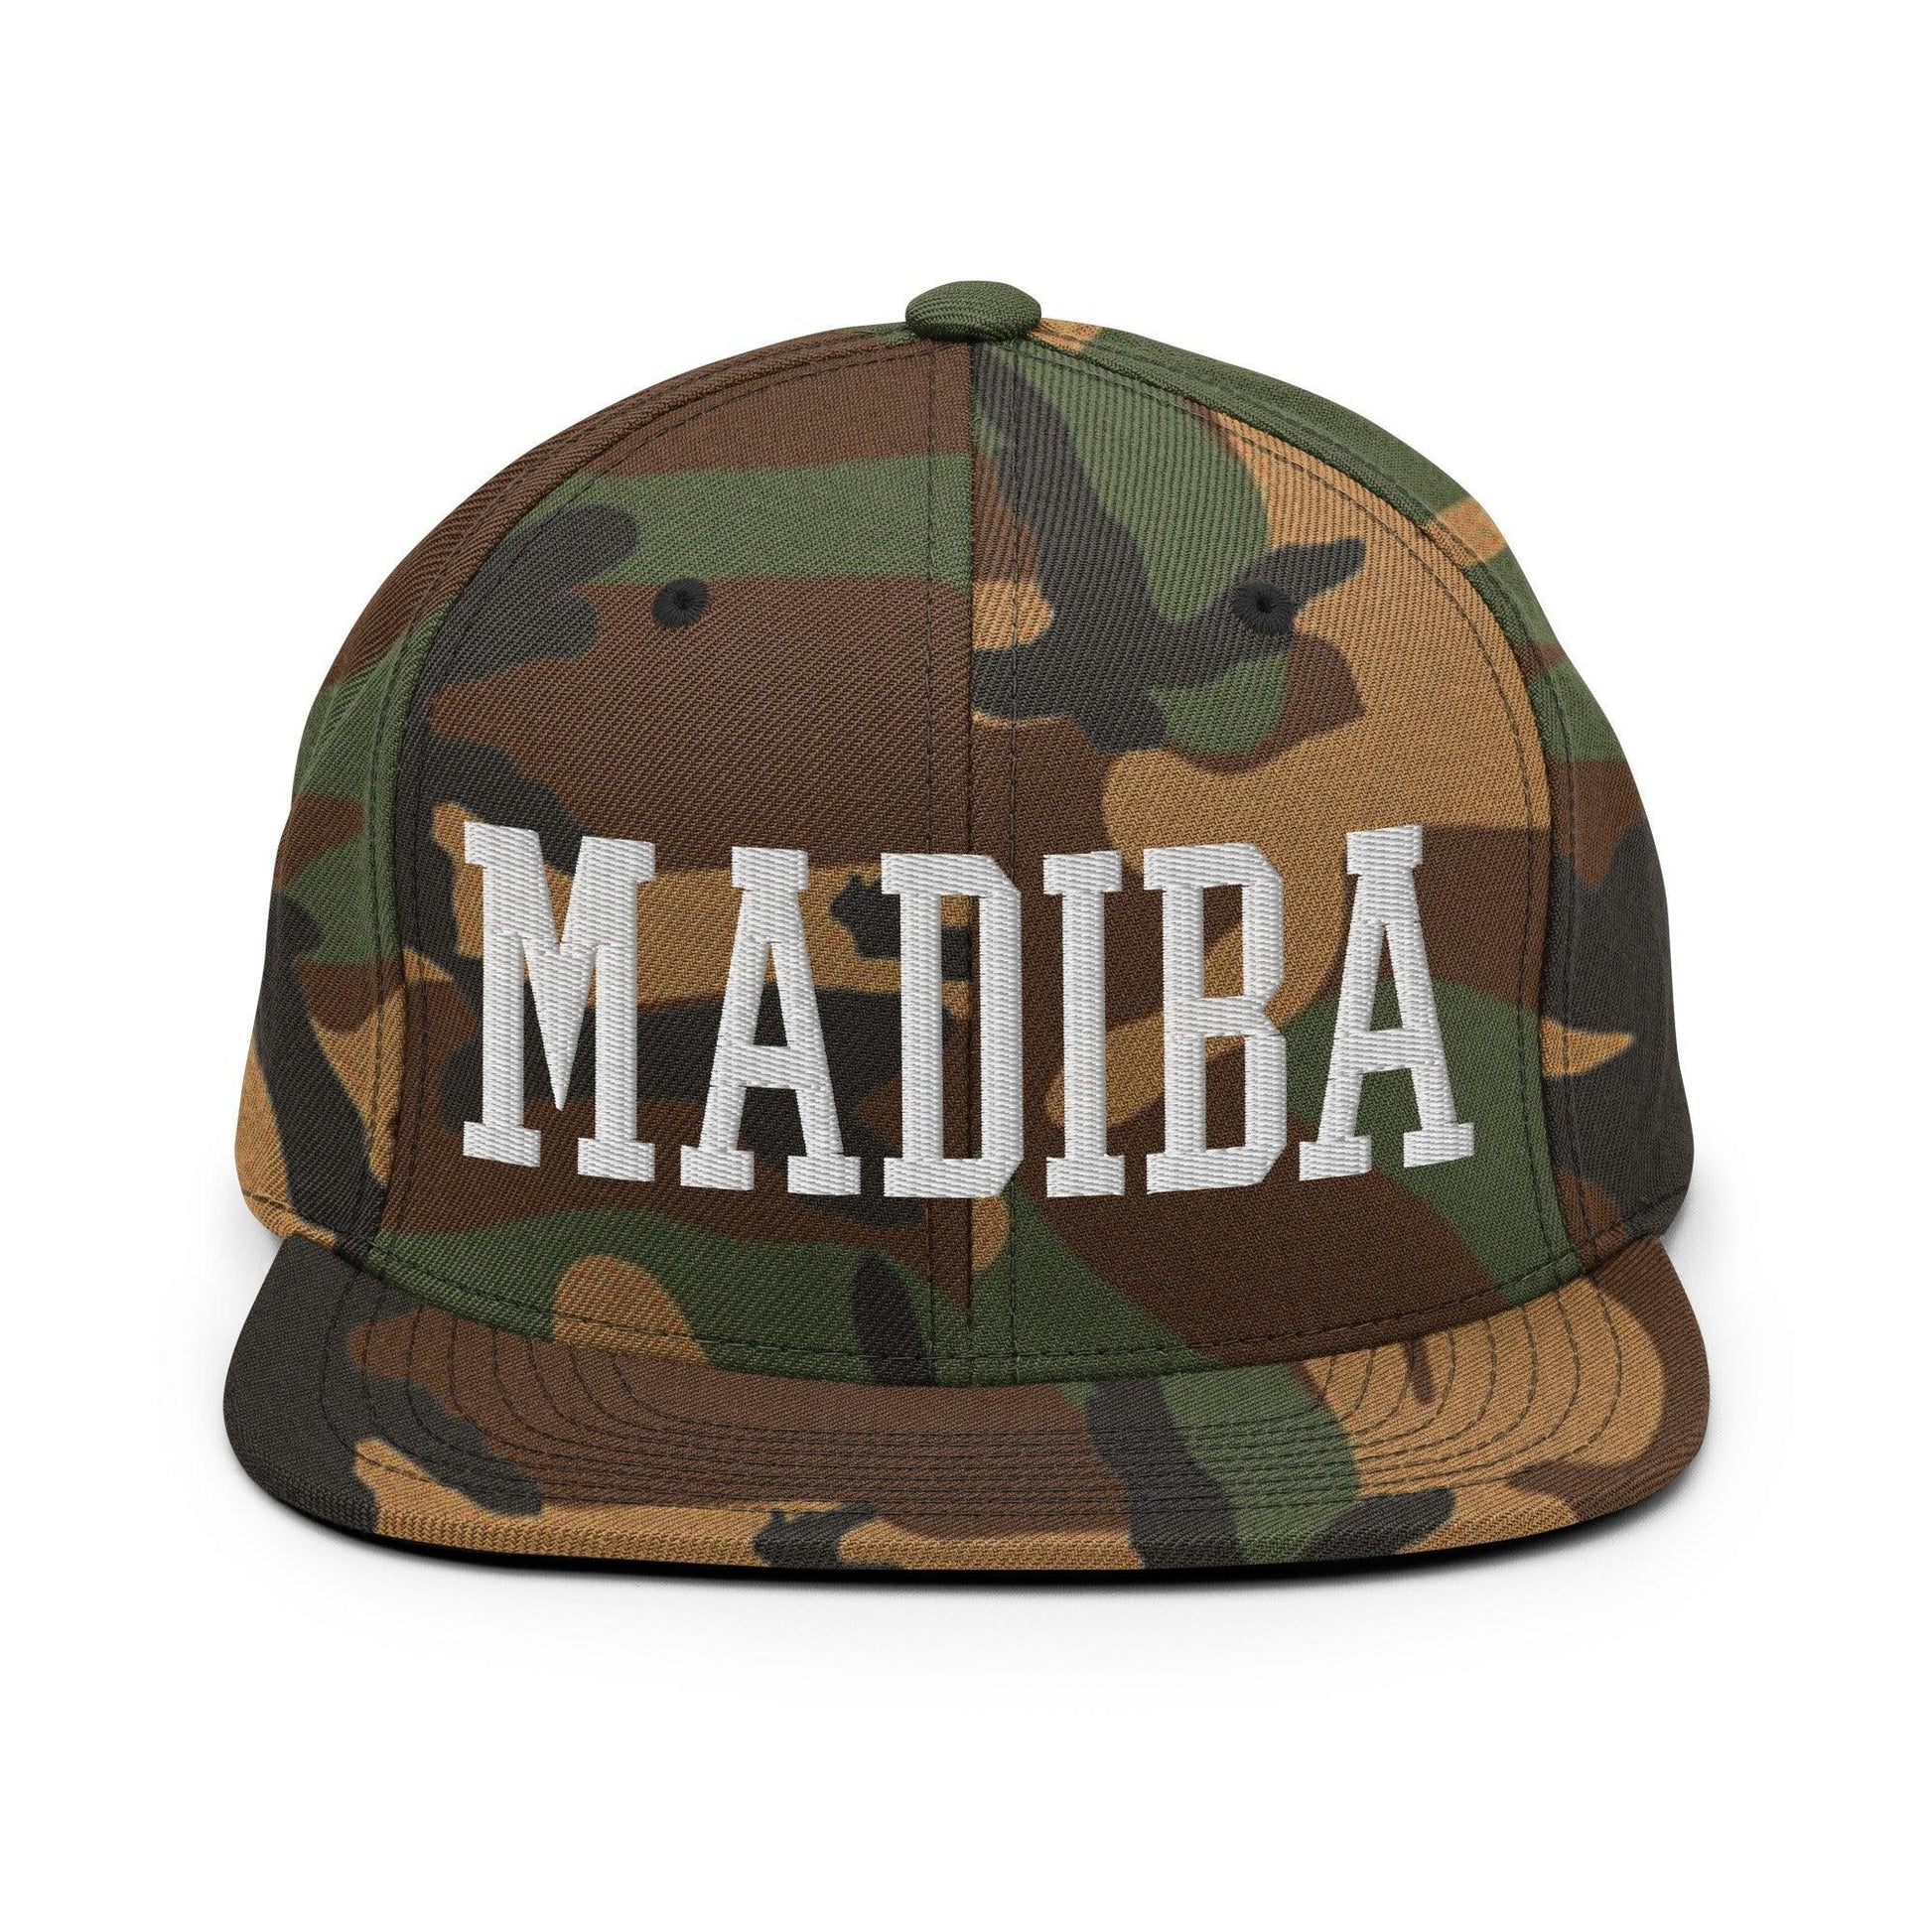 Nelson Mandela Madiba Block Snapback Hat Green Camo